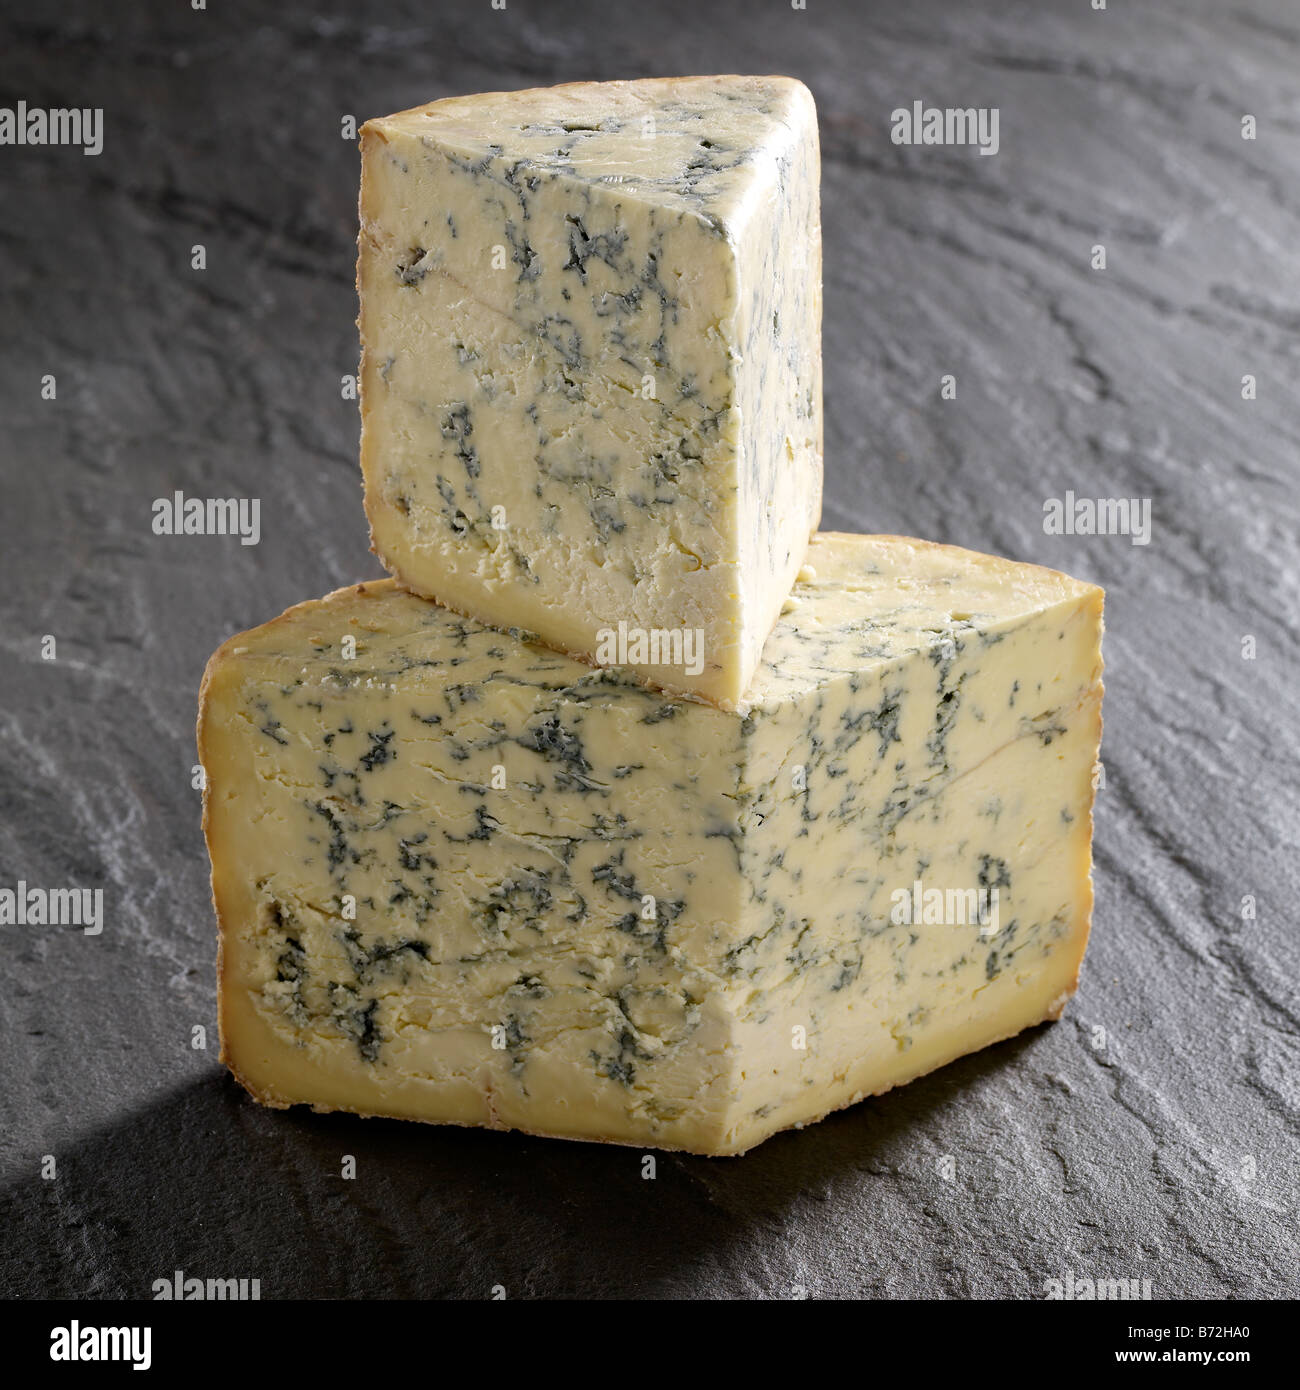 cropwell bishop cheese on slate Stock Photo